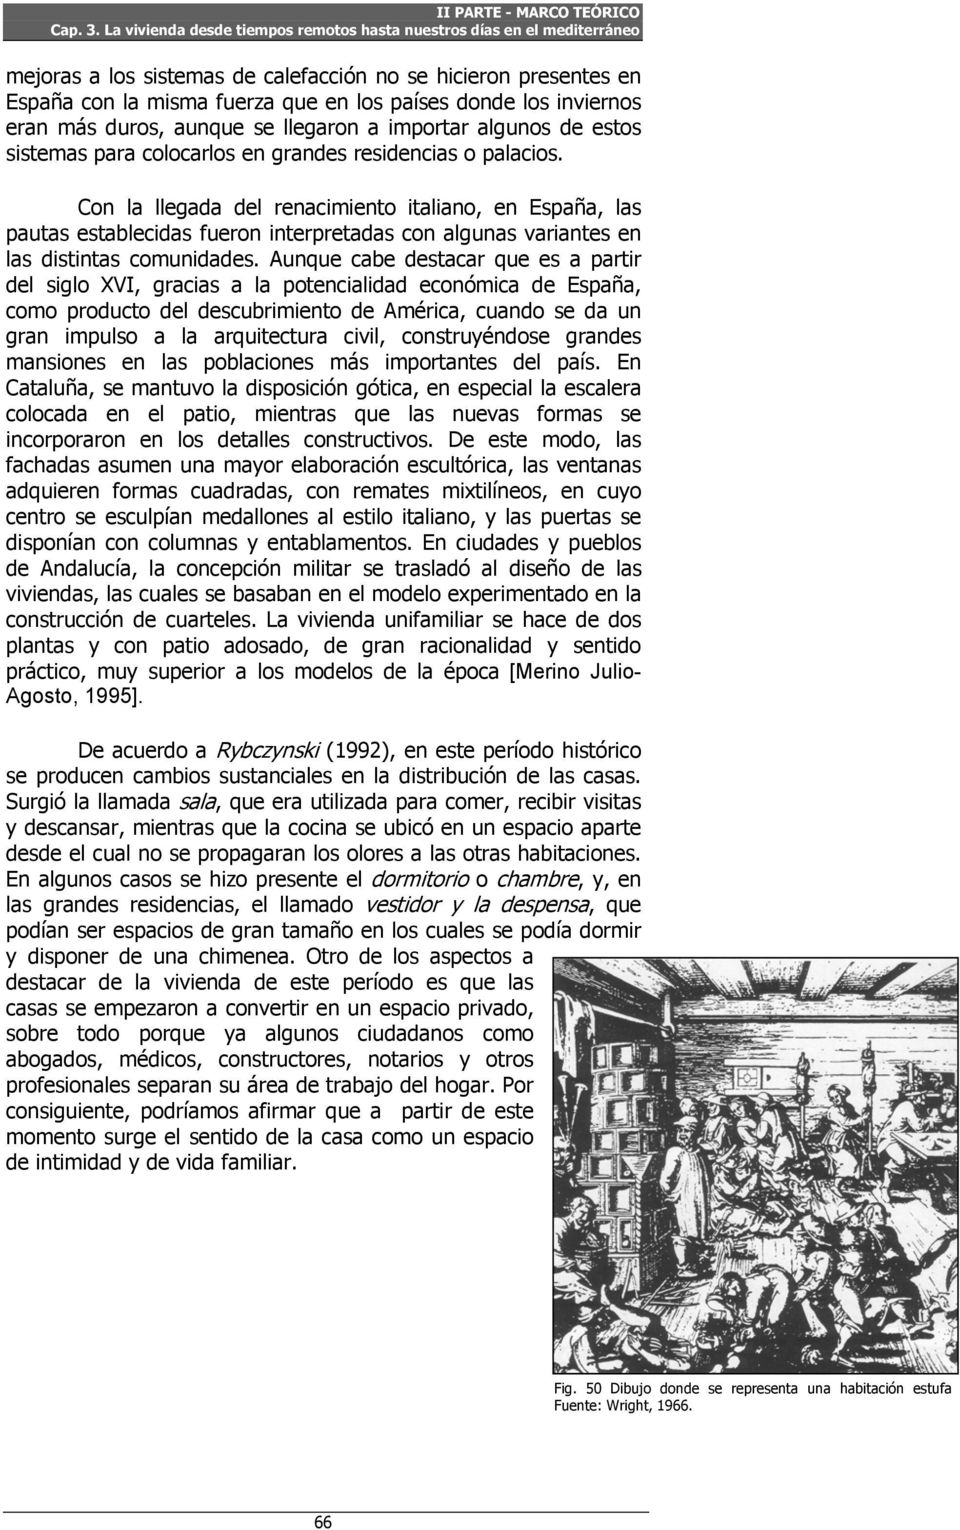 Con la llegada del renacimiento italiano, en España, las pautas establecidas fueron interpretadas con algunas variantes en las distintas comunidades.